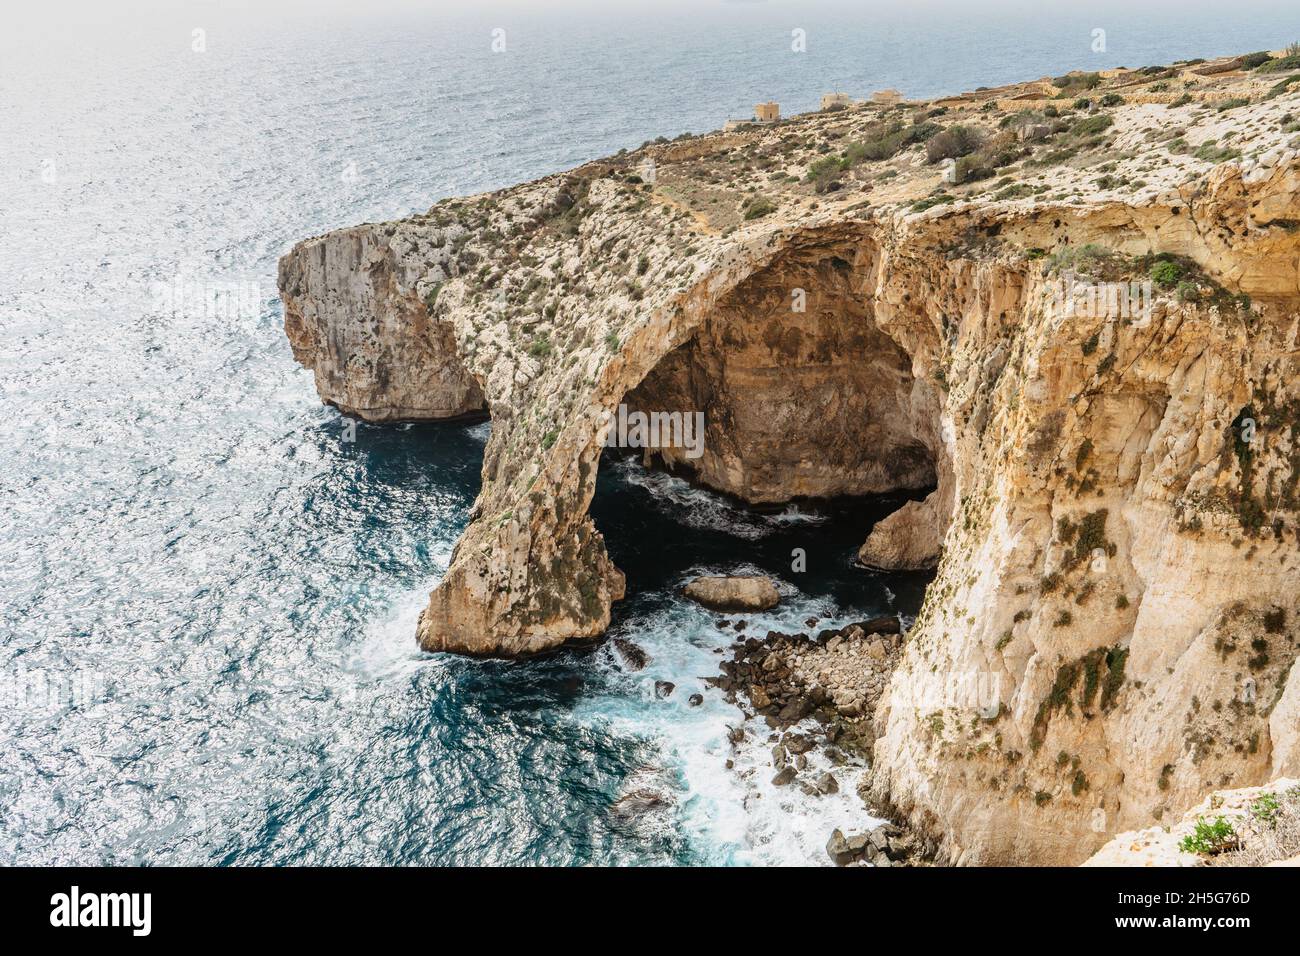 Luftaufnahme der herrlichen Blauen Grotte, Komplex von sieben Höhlen entlang der Südküste von Malta gefunden. Beliebte Tauch- und Schnorchelplatz. Klar hell Stockfoto